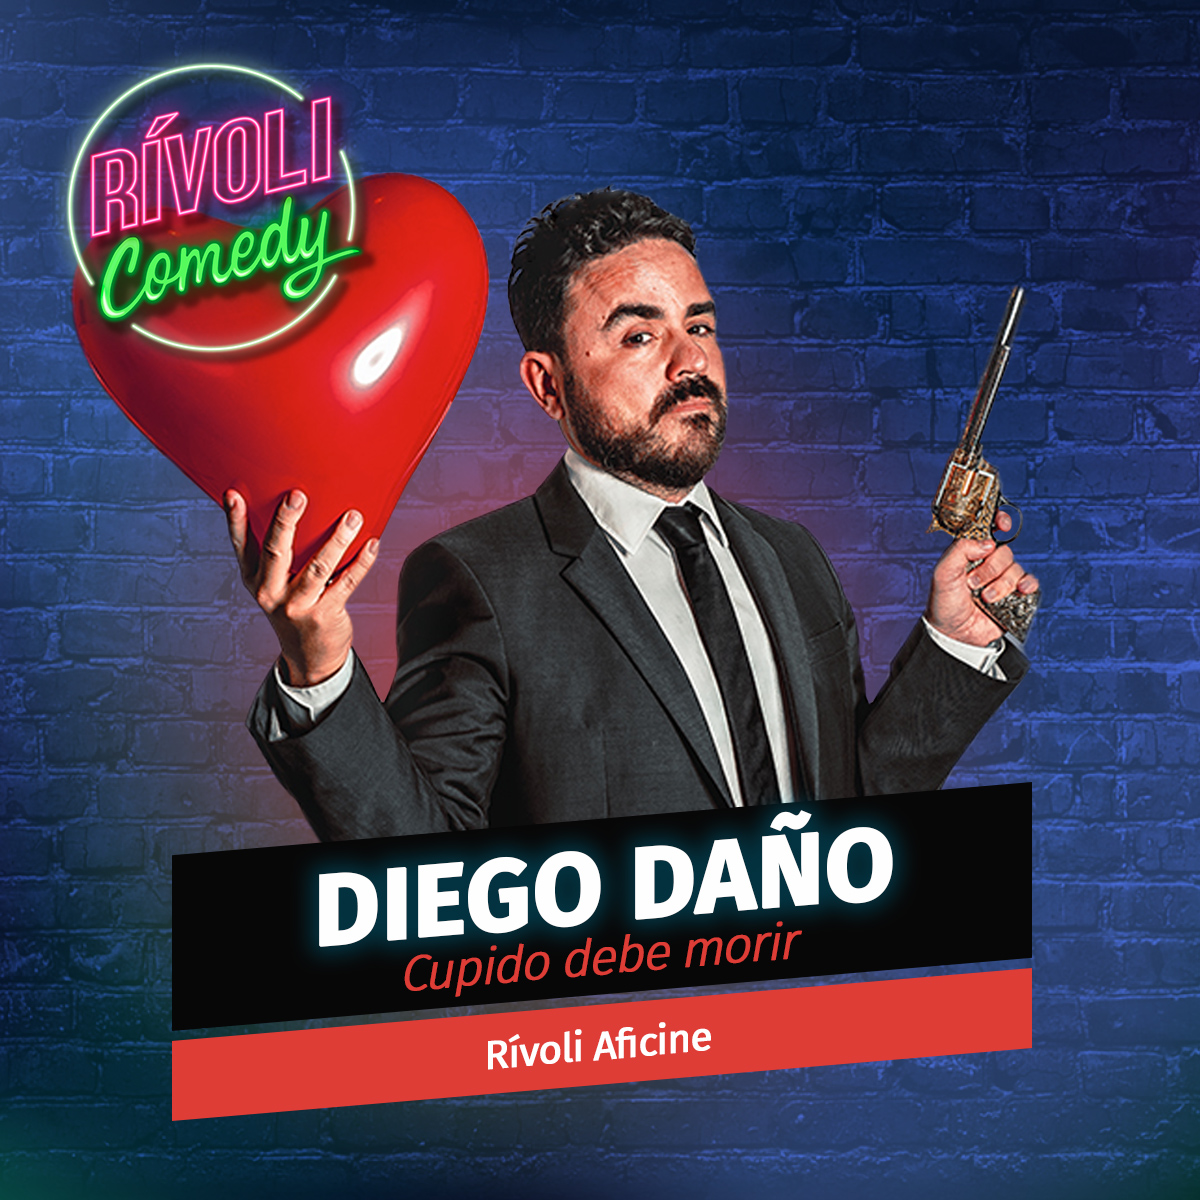 Diego Daño | Cupido debe morir · 22 de marzo · Palma de Mallorca (Rívoli Comedy)